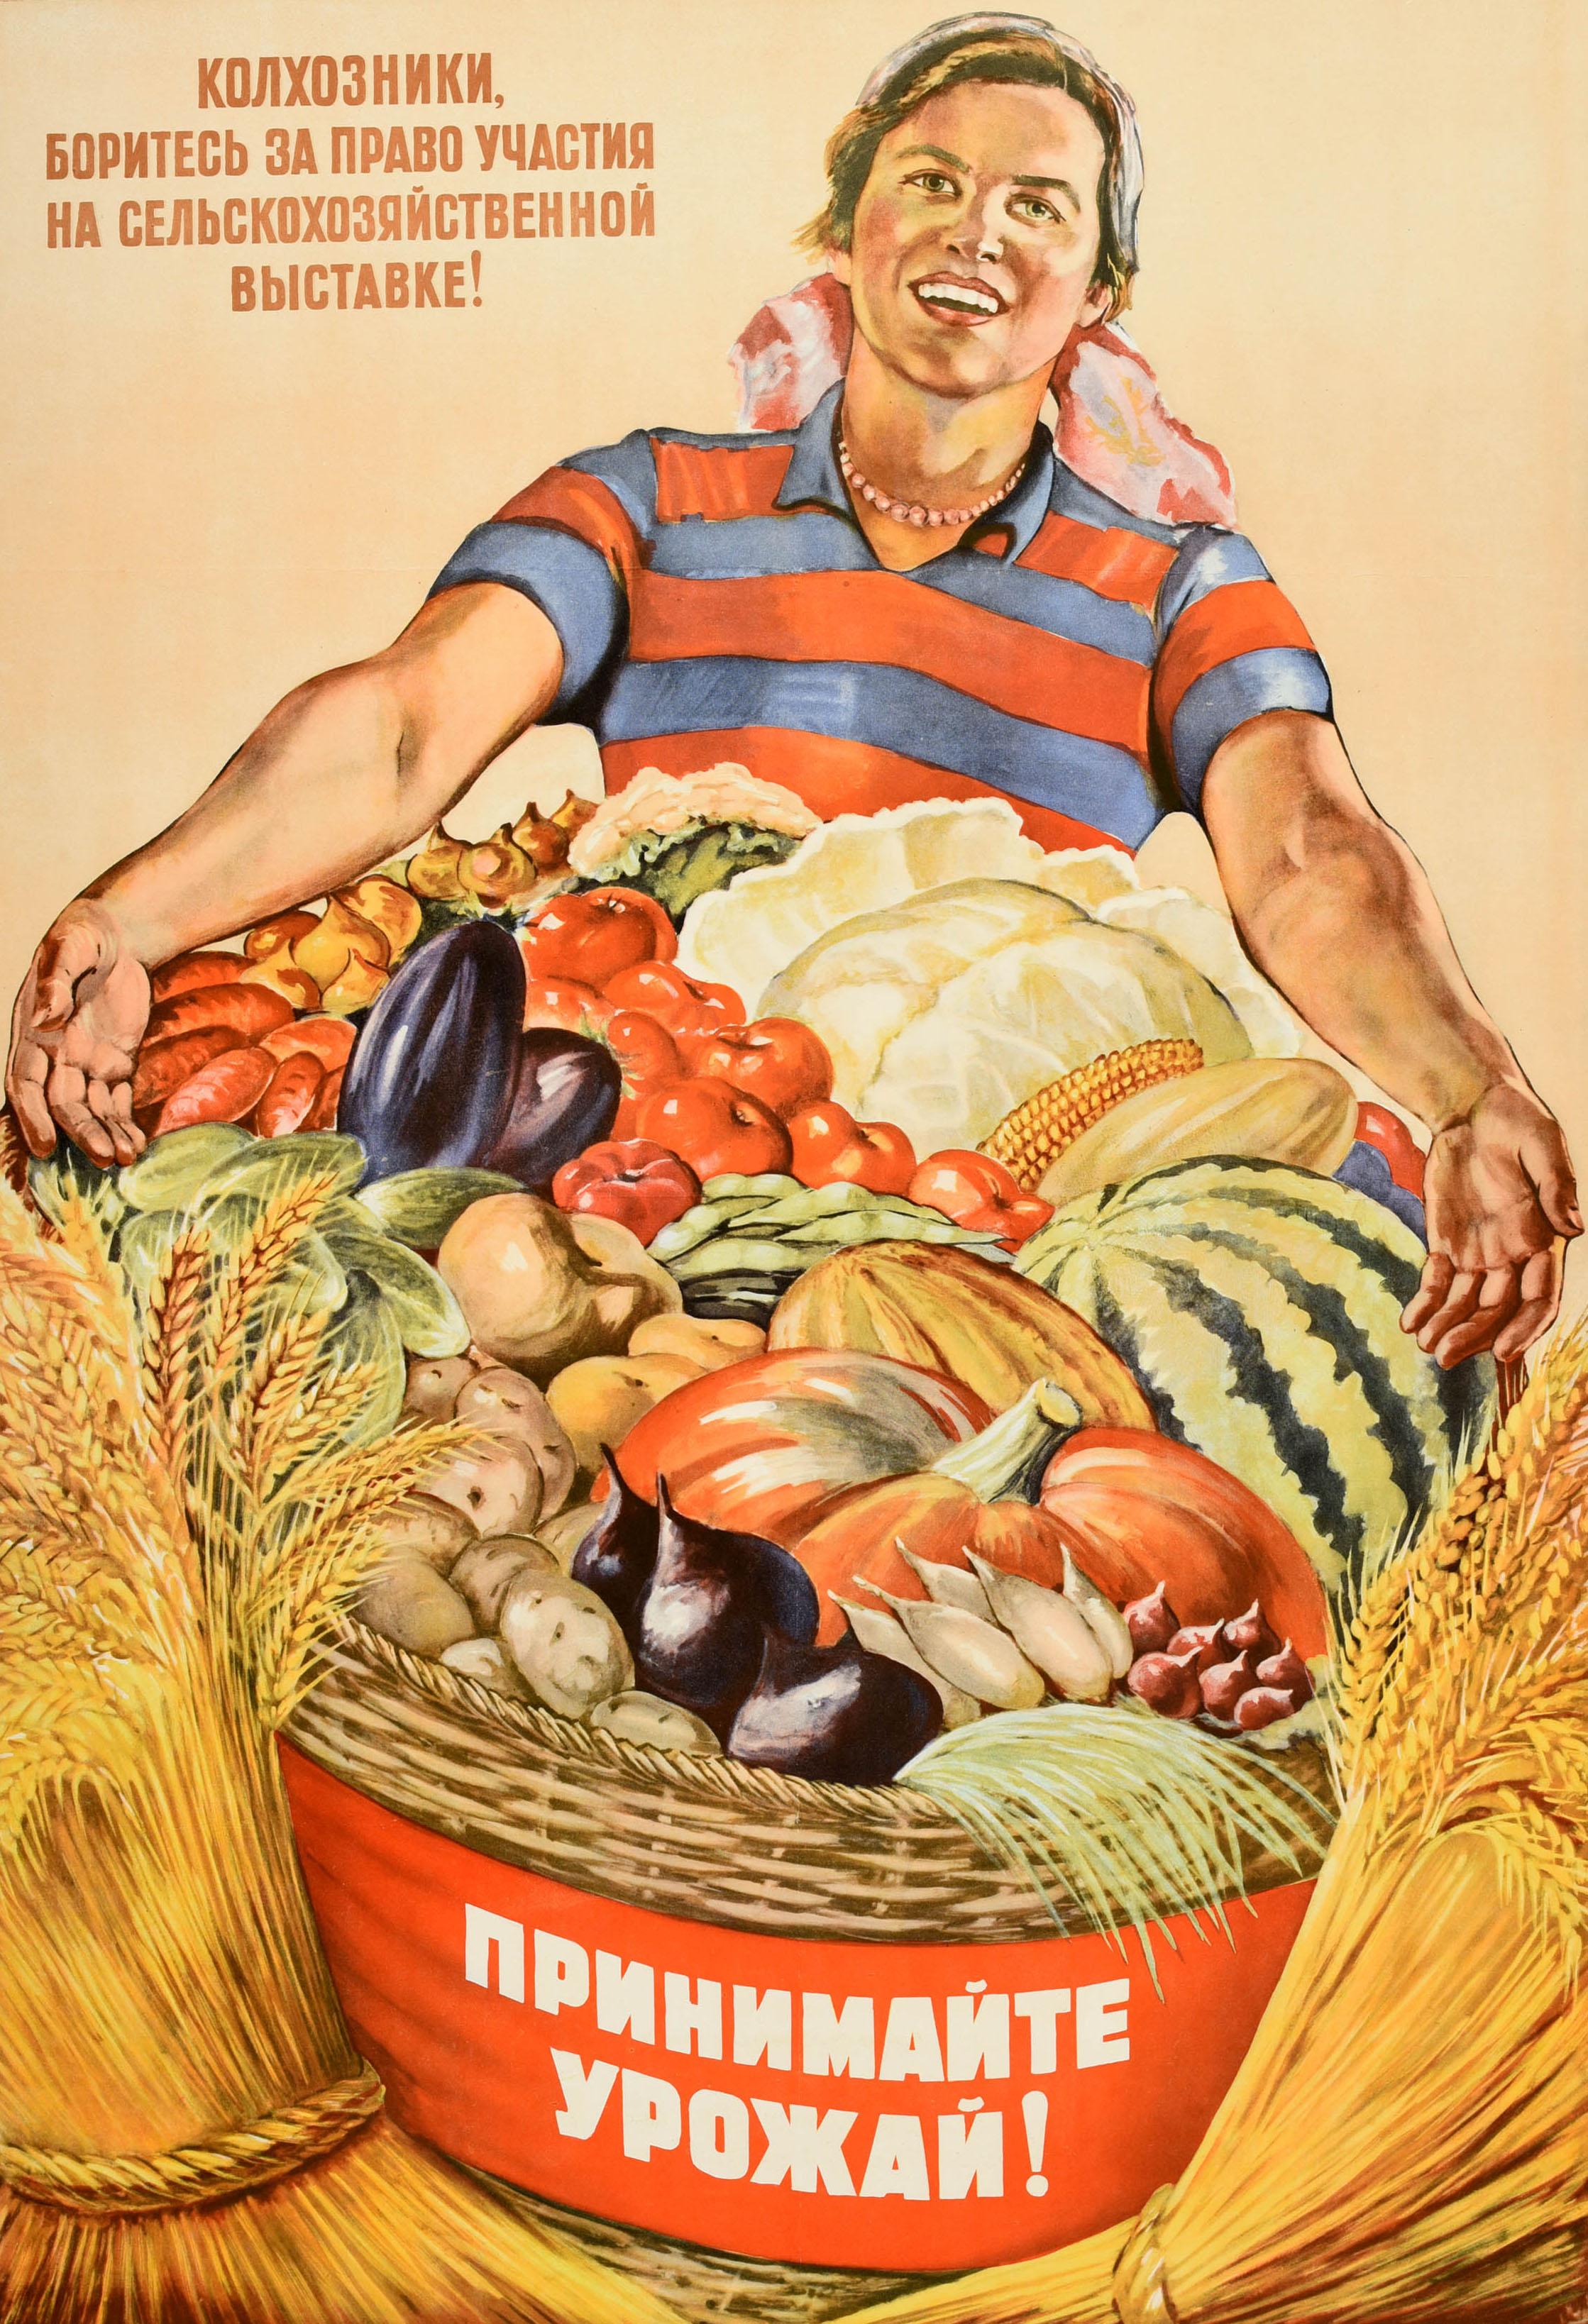 Affiche originale de propagande alimentaire soviétique vintage - Acceptez la récolte ! / ? ????????? ? ?????! - avec une dame souriante montrant au spectateur un grand panier rempli de fruits et de légumes, dont une pastèque, une citrouille, un